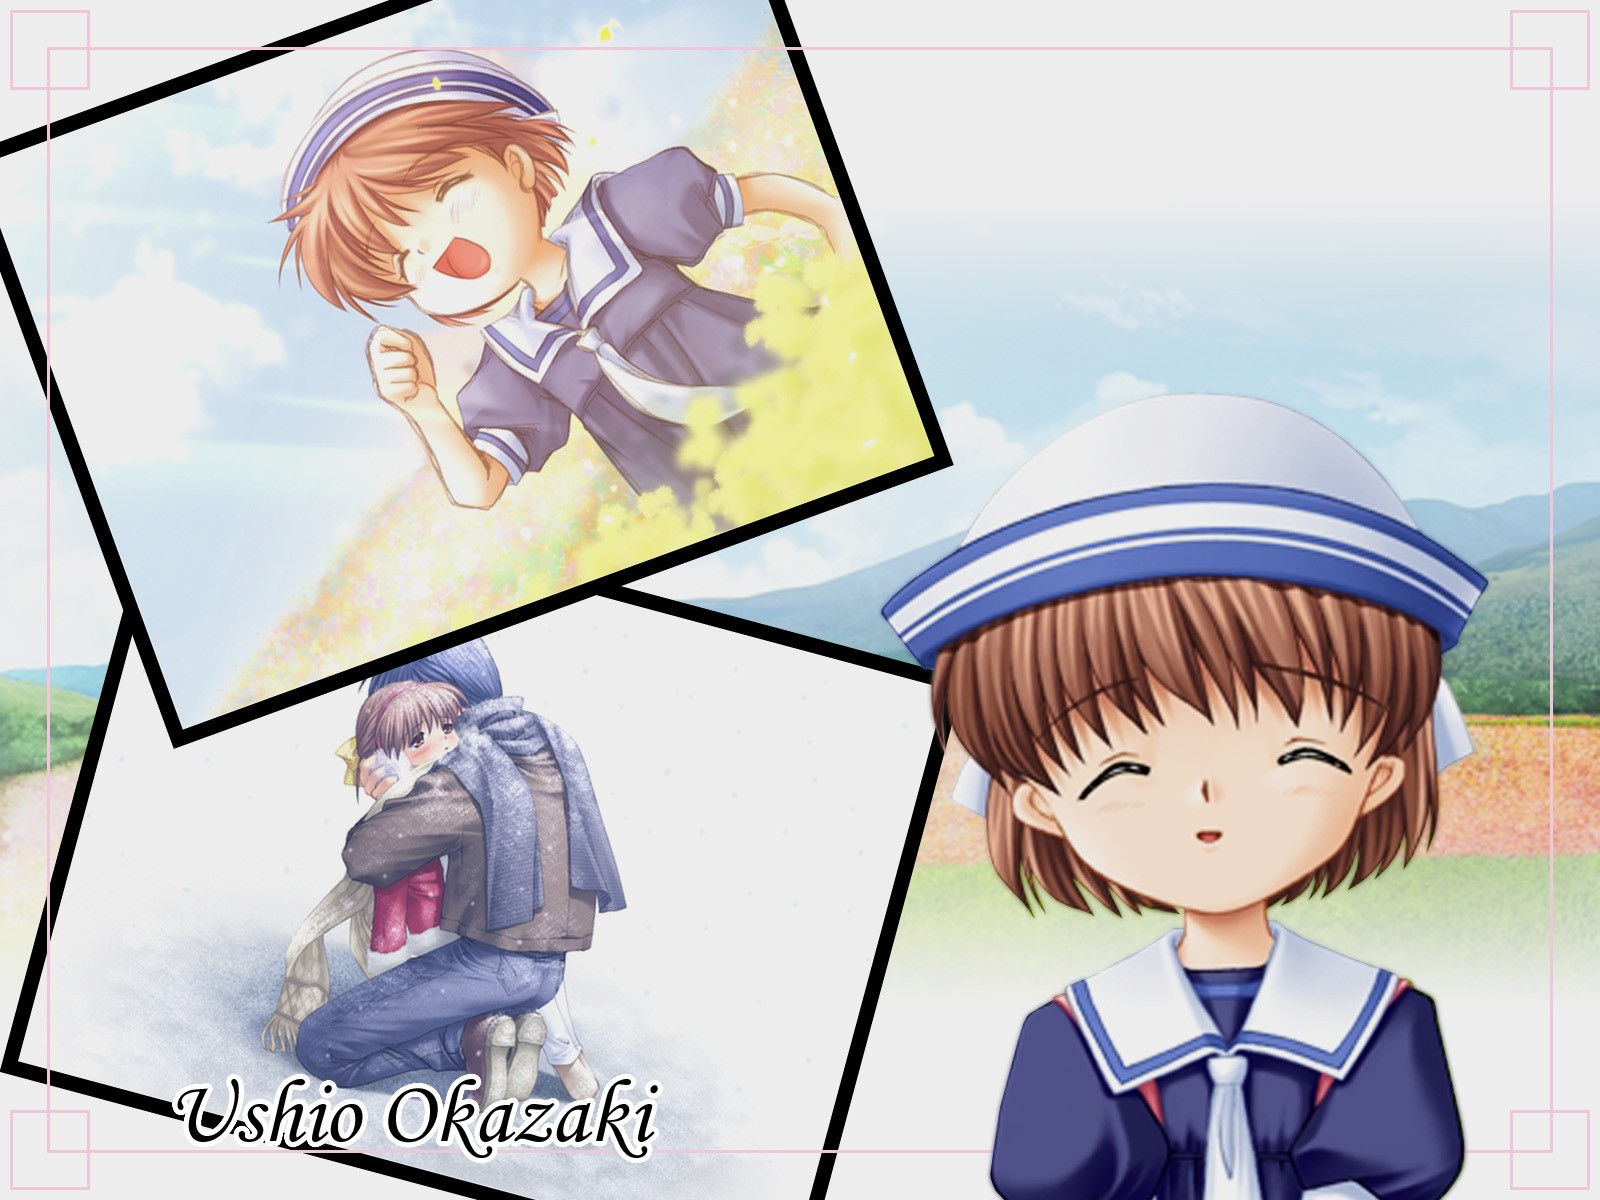 Free download wallpaper Anime, Clannad, Tomoya Okazaki, Ushio Okazaki on your PC desktop